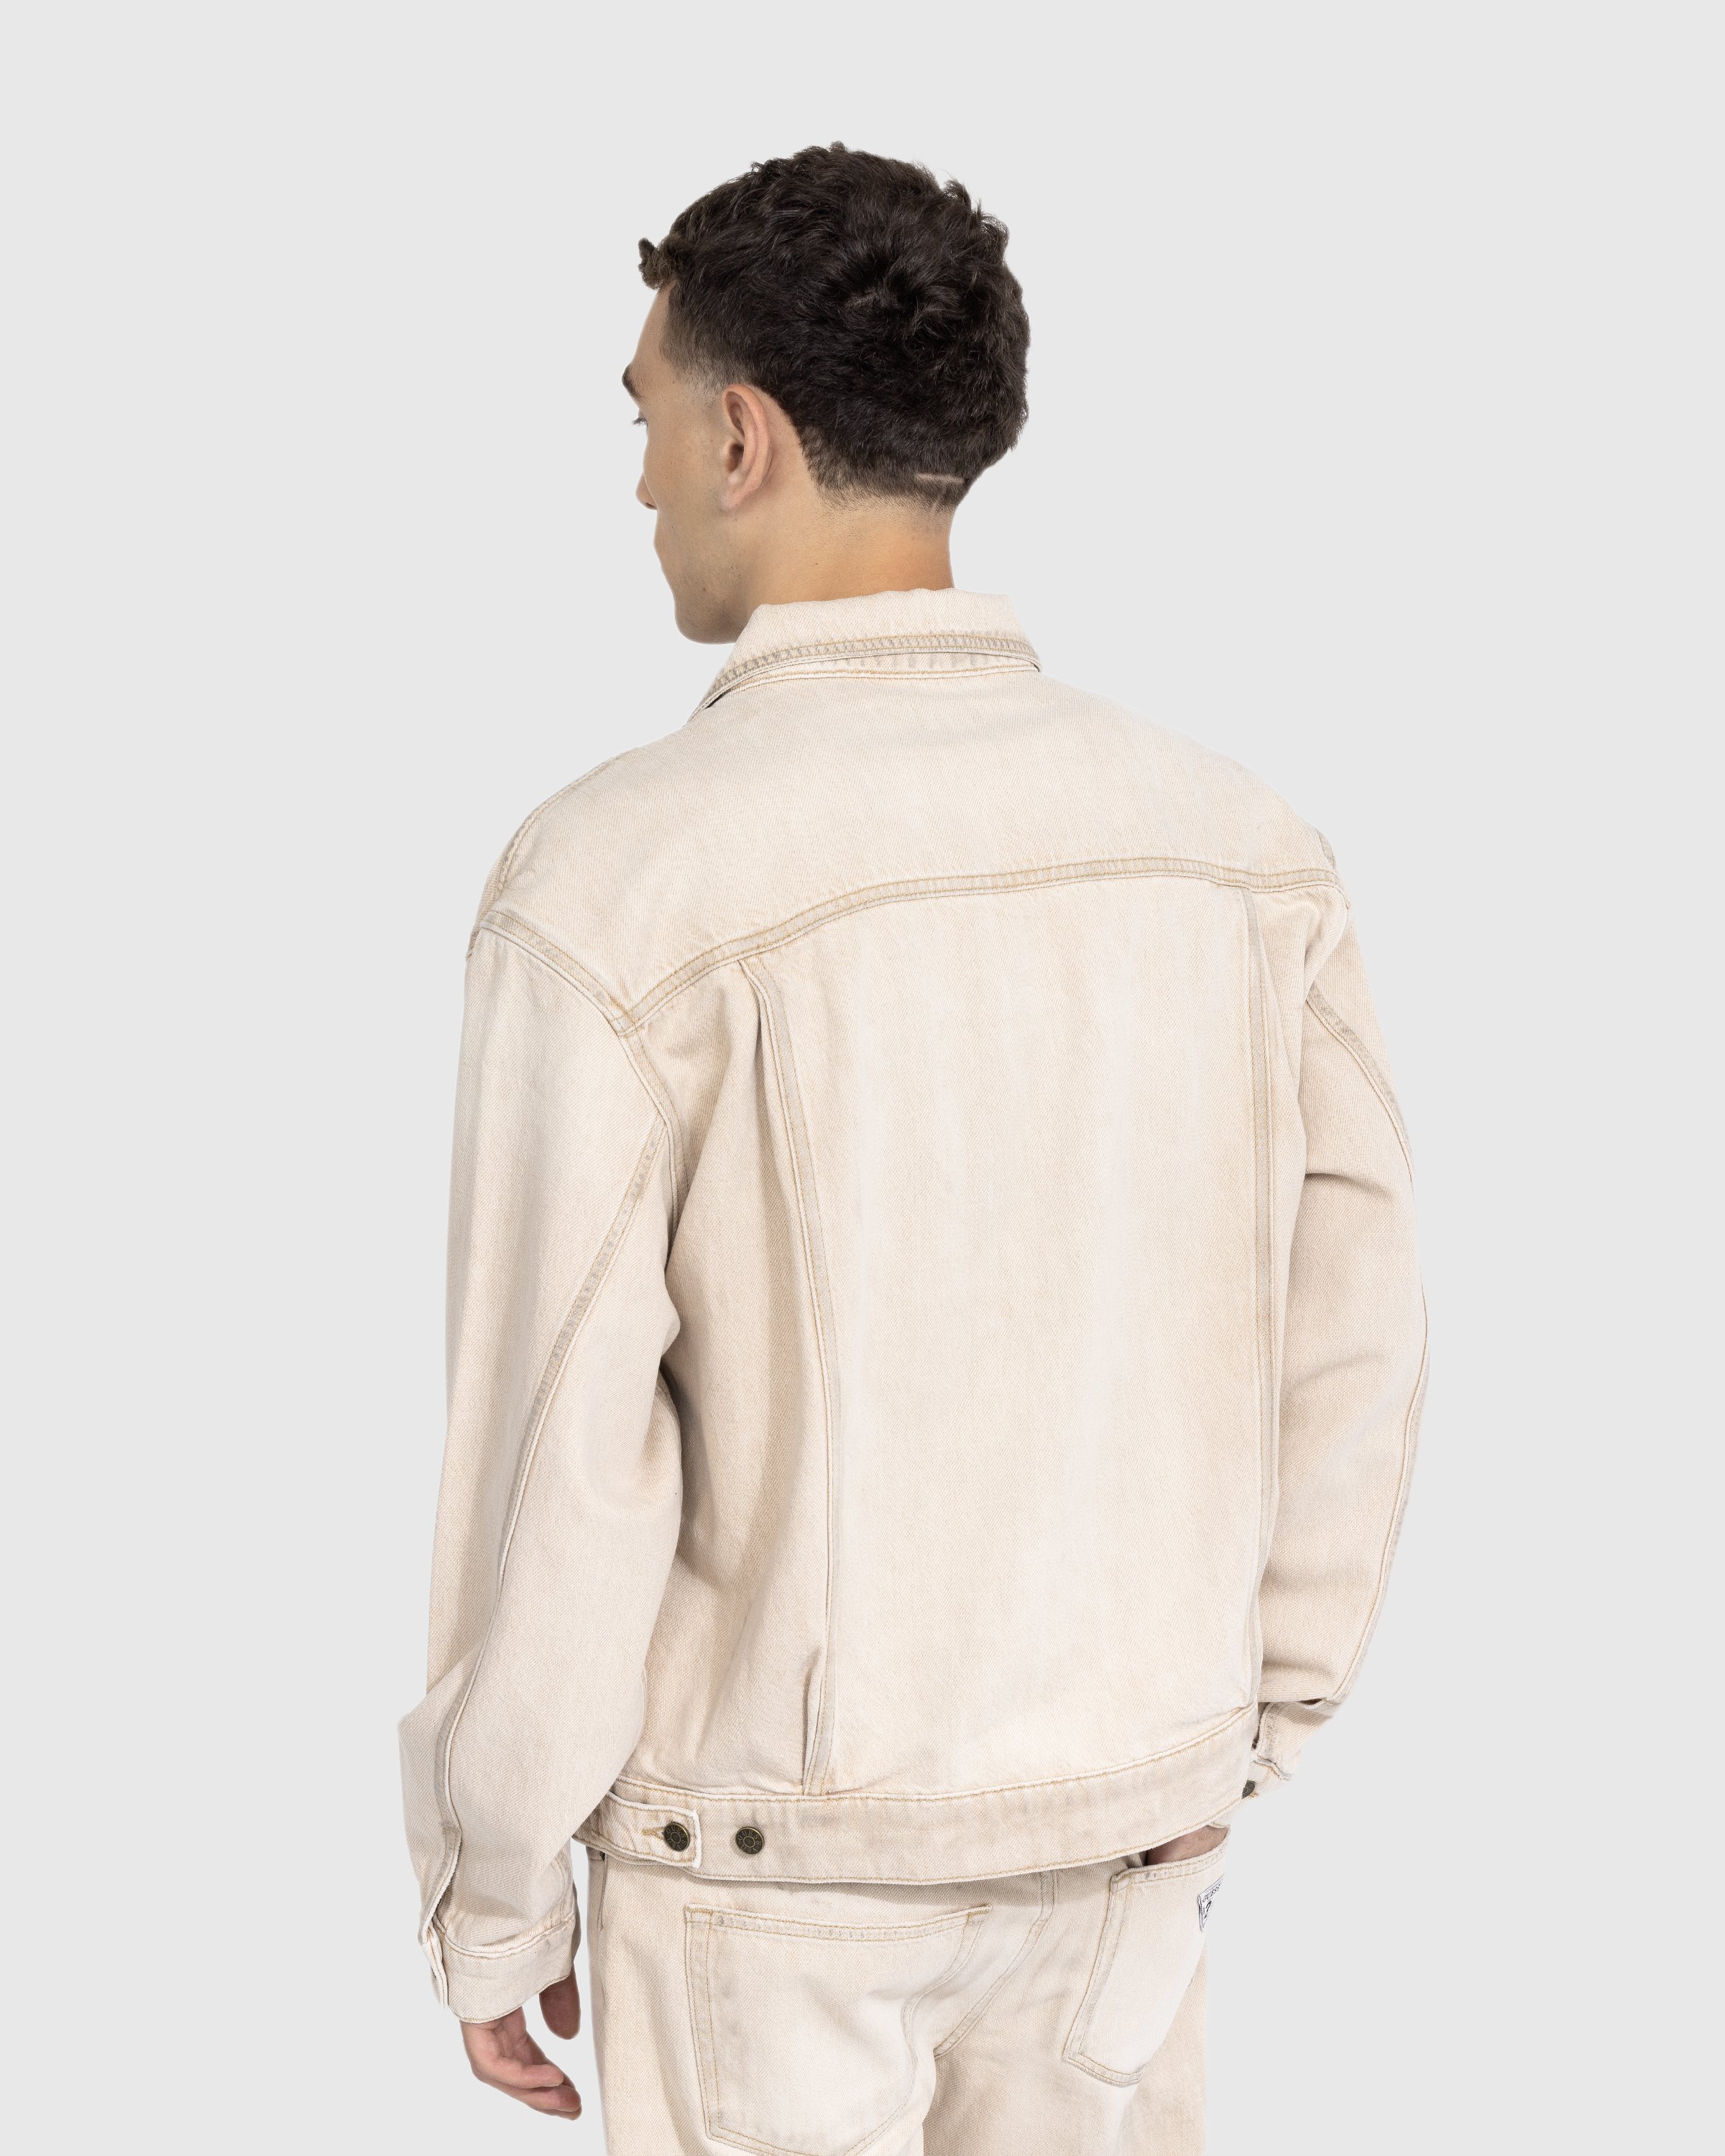 Guess USA - Vintage Denim Jacket Beige - Clothing - Beige - Image 3